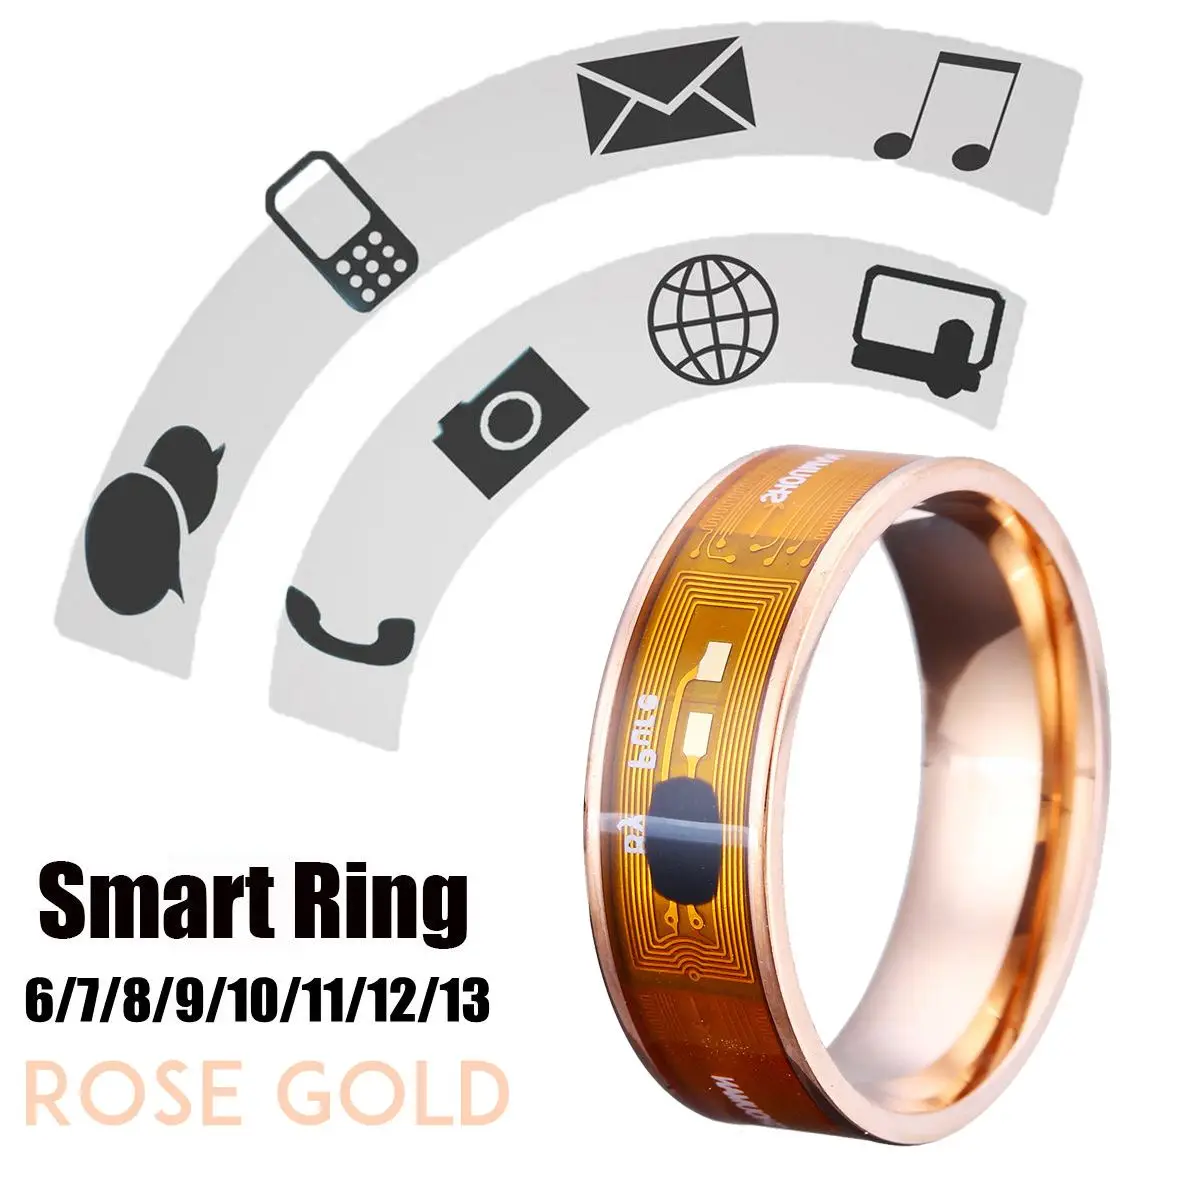 Смарт-кольцо NFC ID карты многофункциональные водонепроницаемые умные Волшебные умные часы палец цифровое кольцо для мобильного телефона NFC